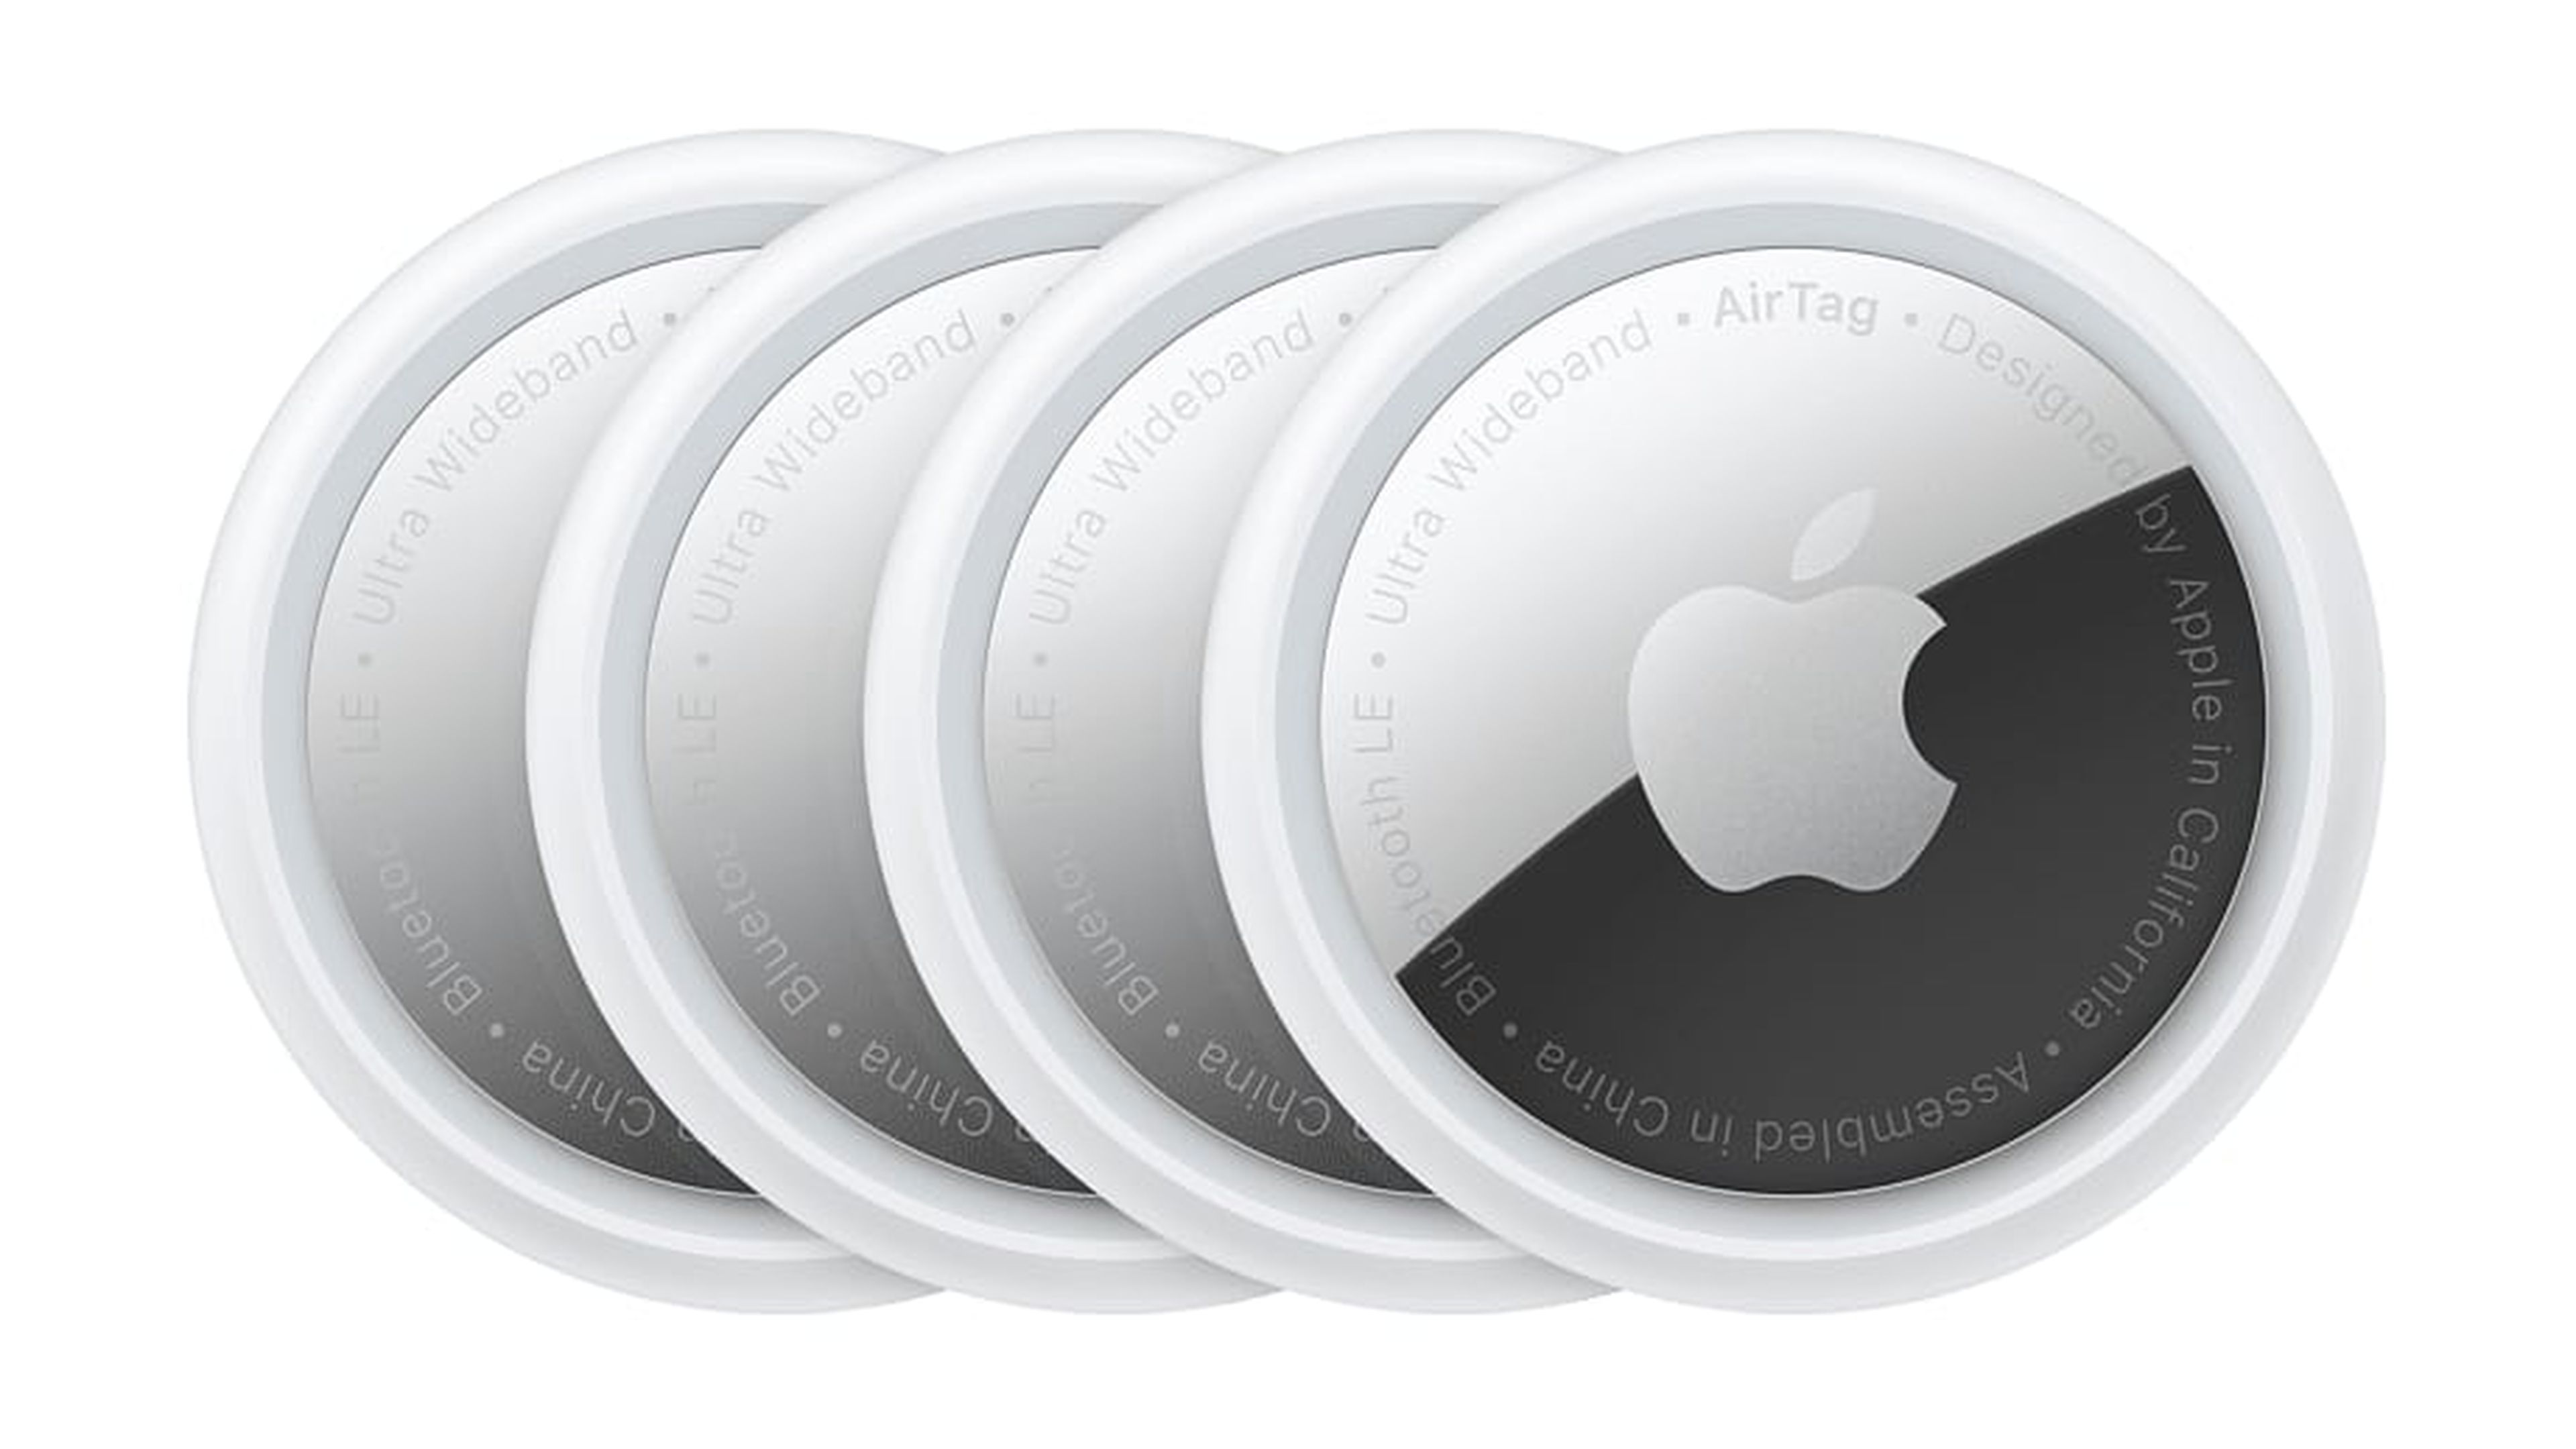 Pack de 4 Apple AirTag